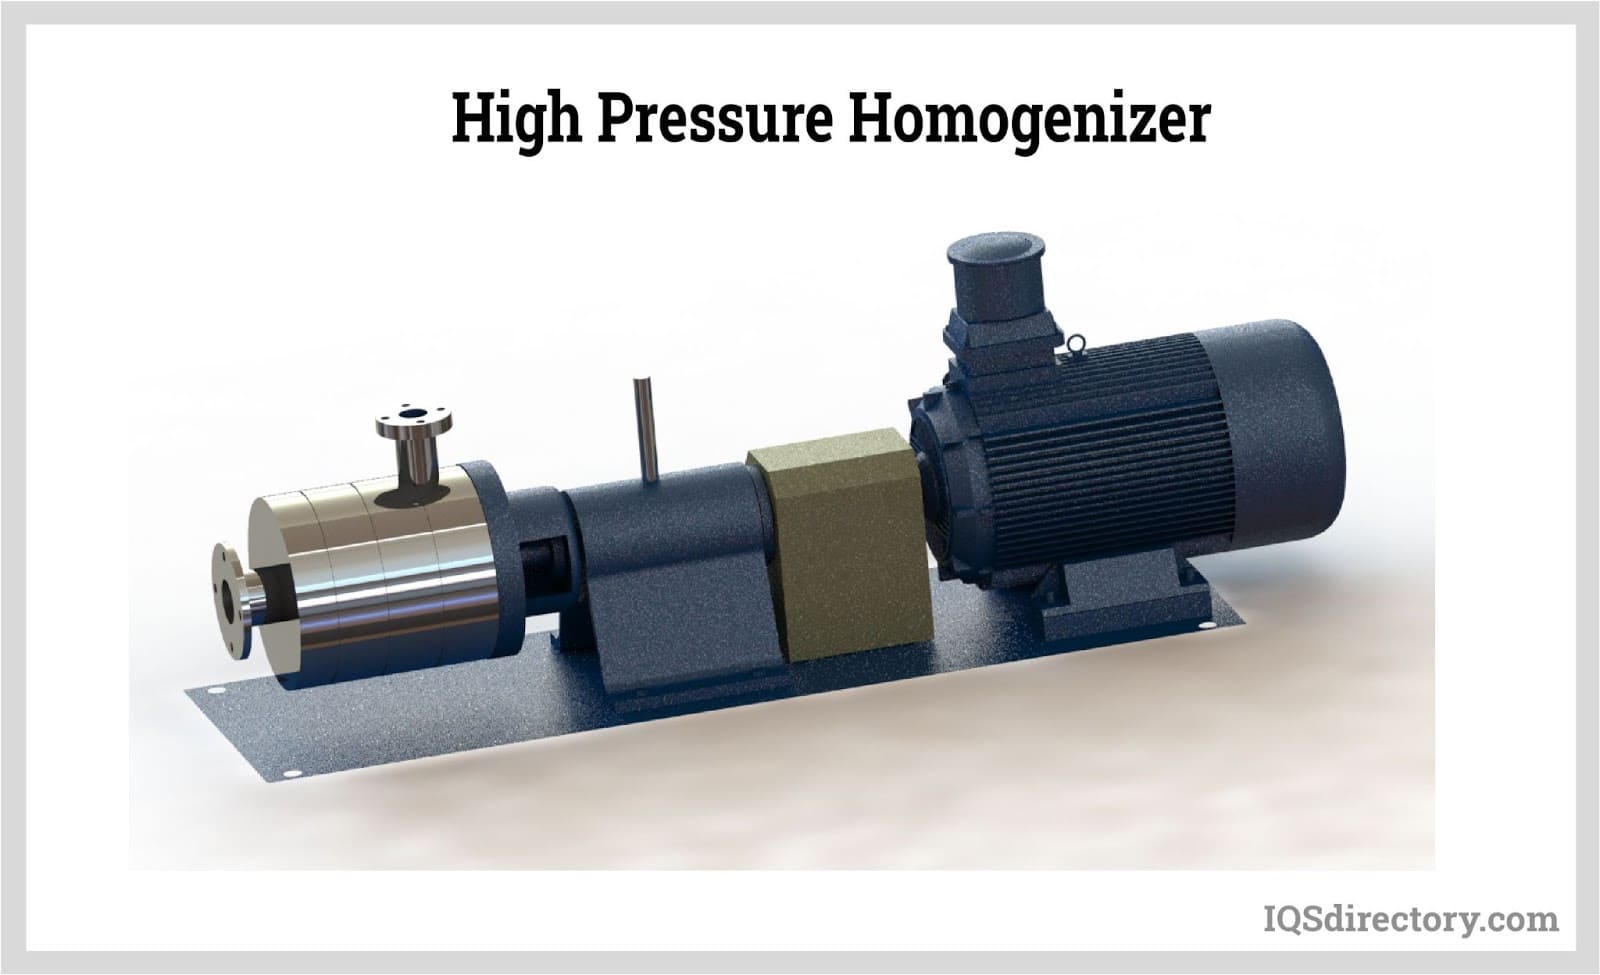 High Pressure Homogenizer